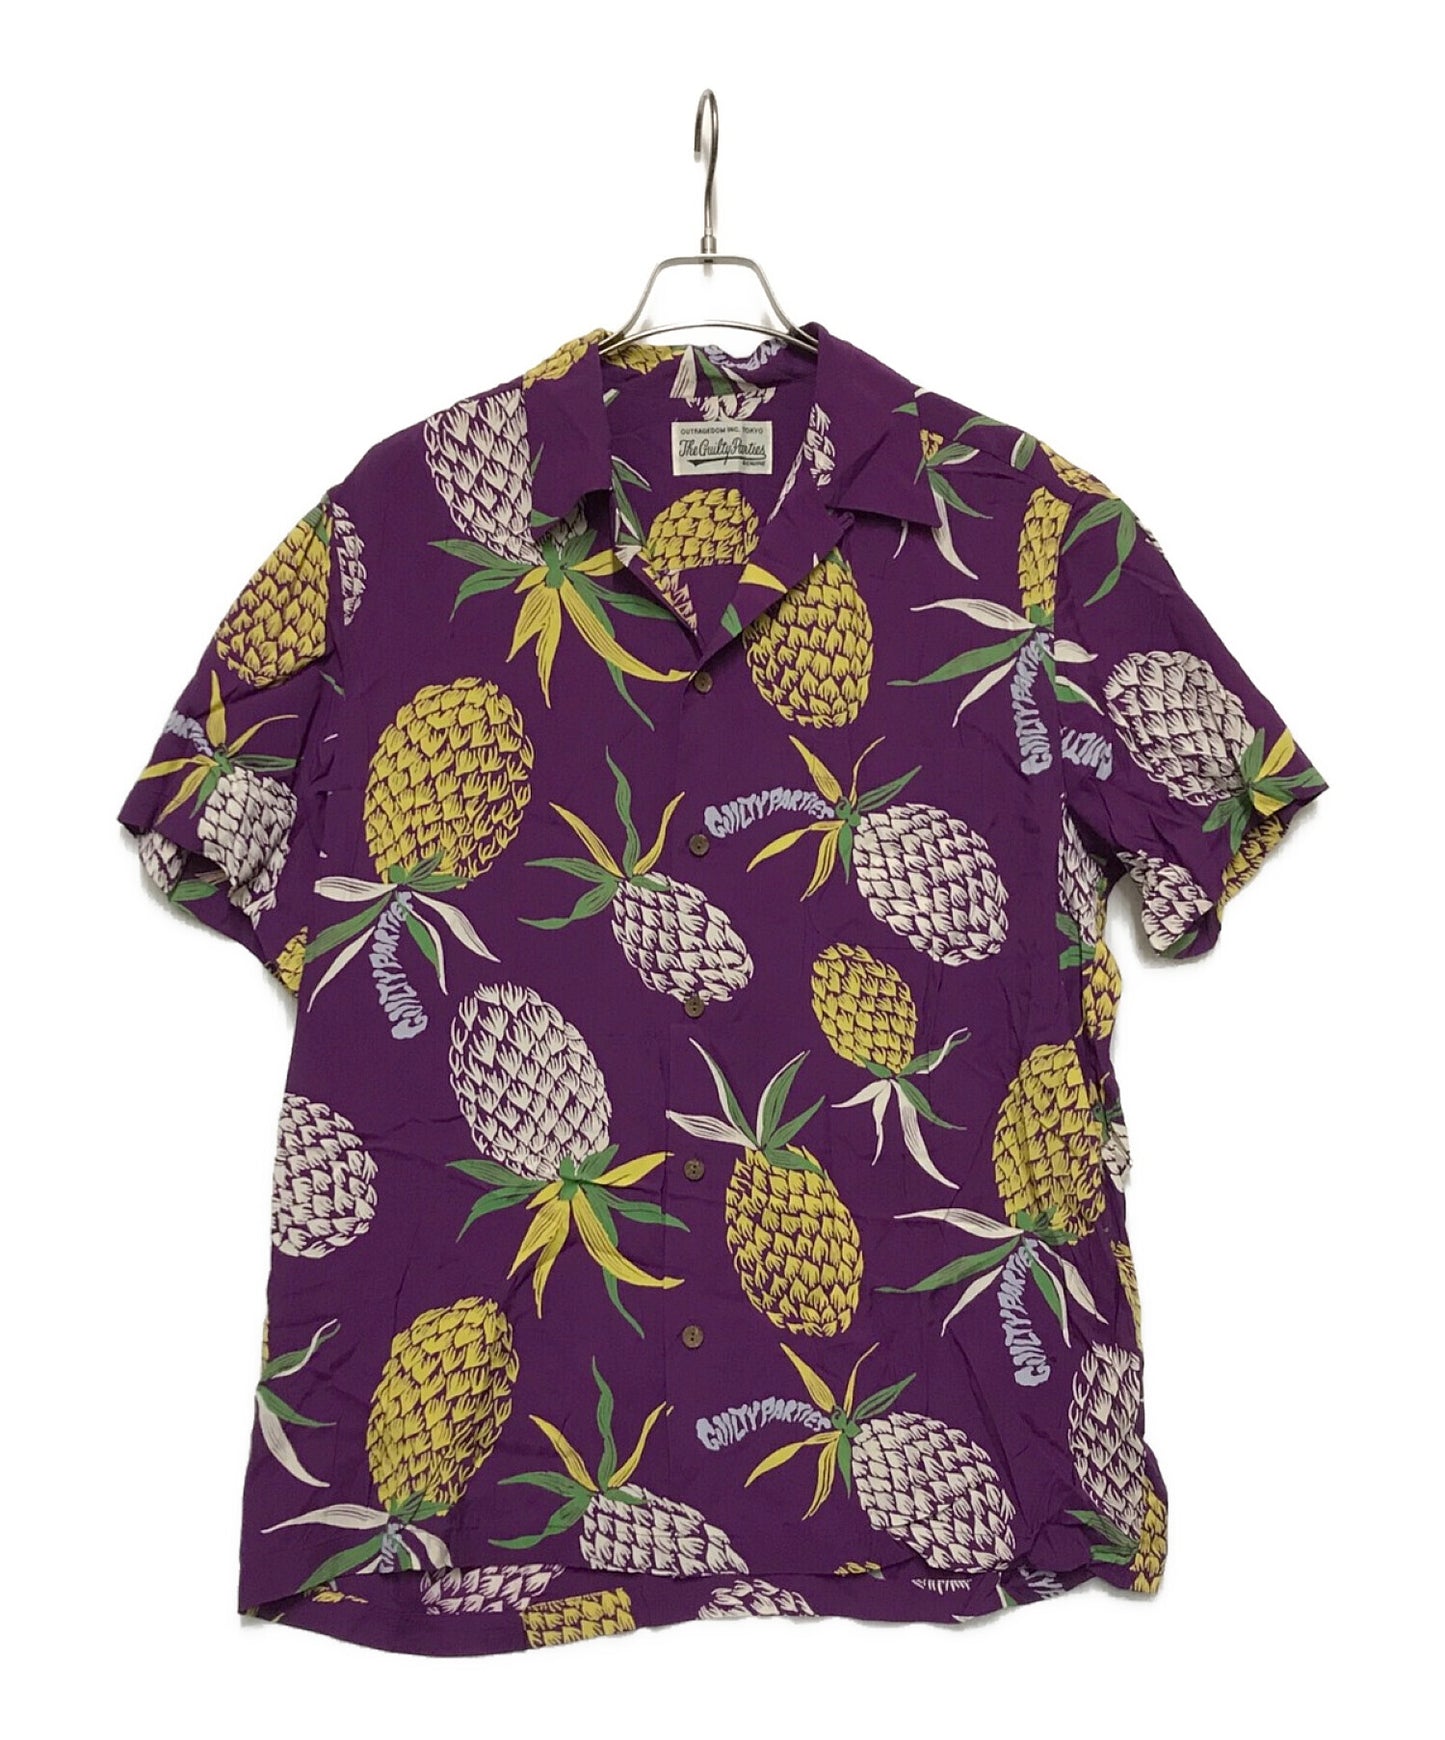 Wacko Maria Pineapple S/S เสื้อฮาวายเปิดเสื้อคอปก